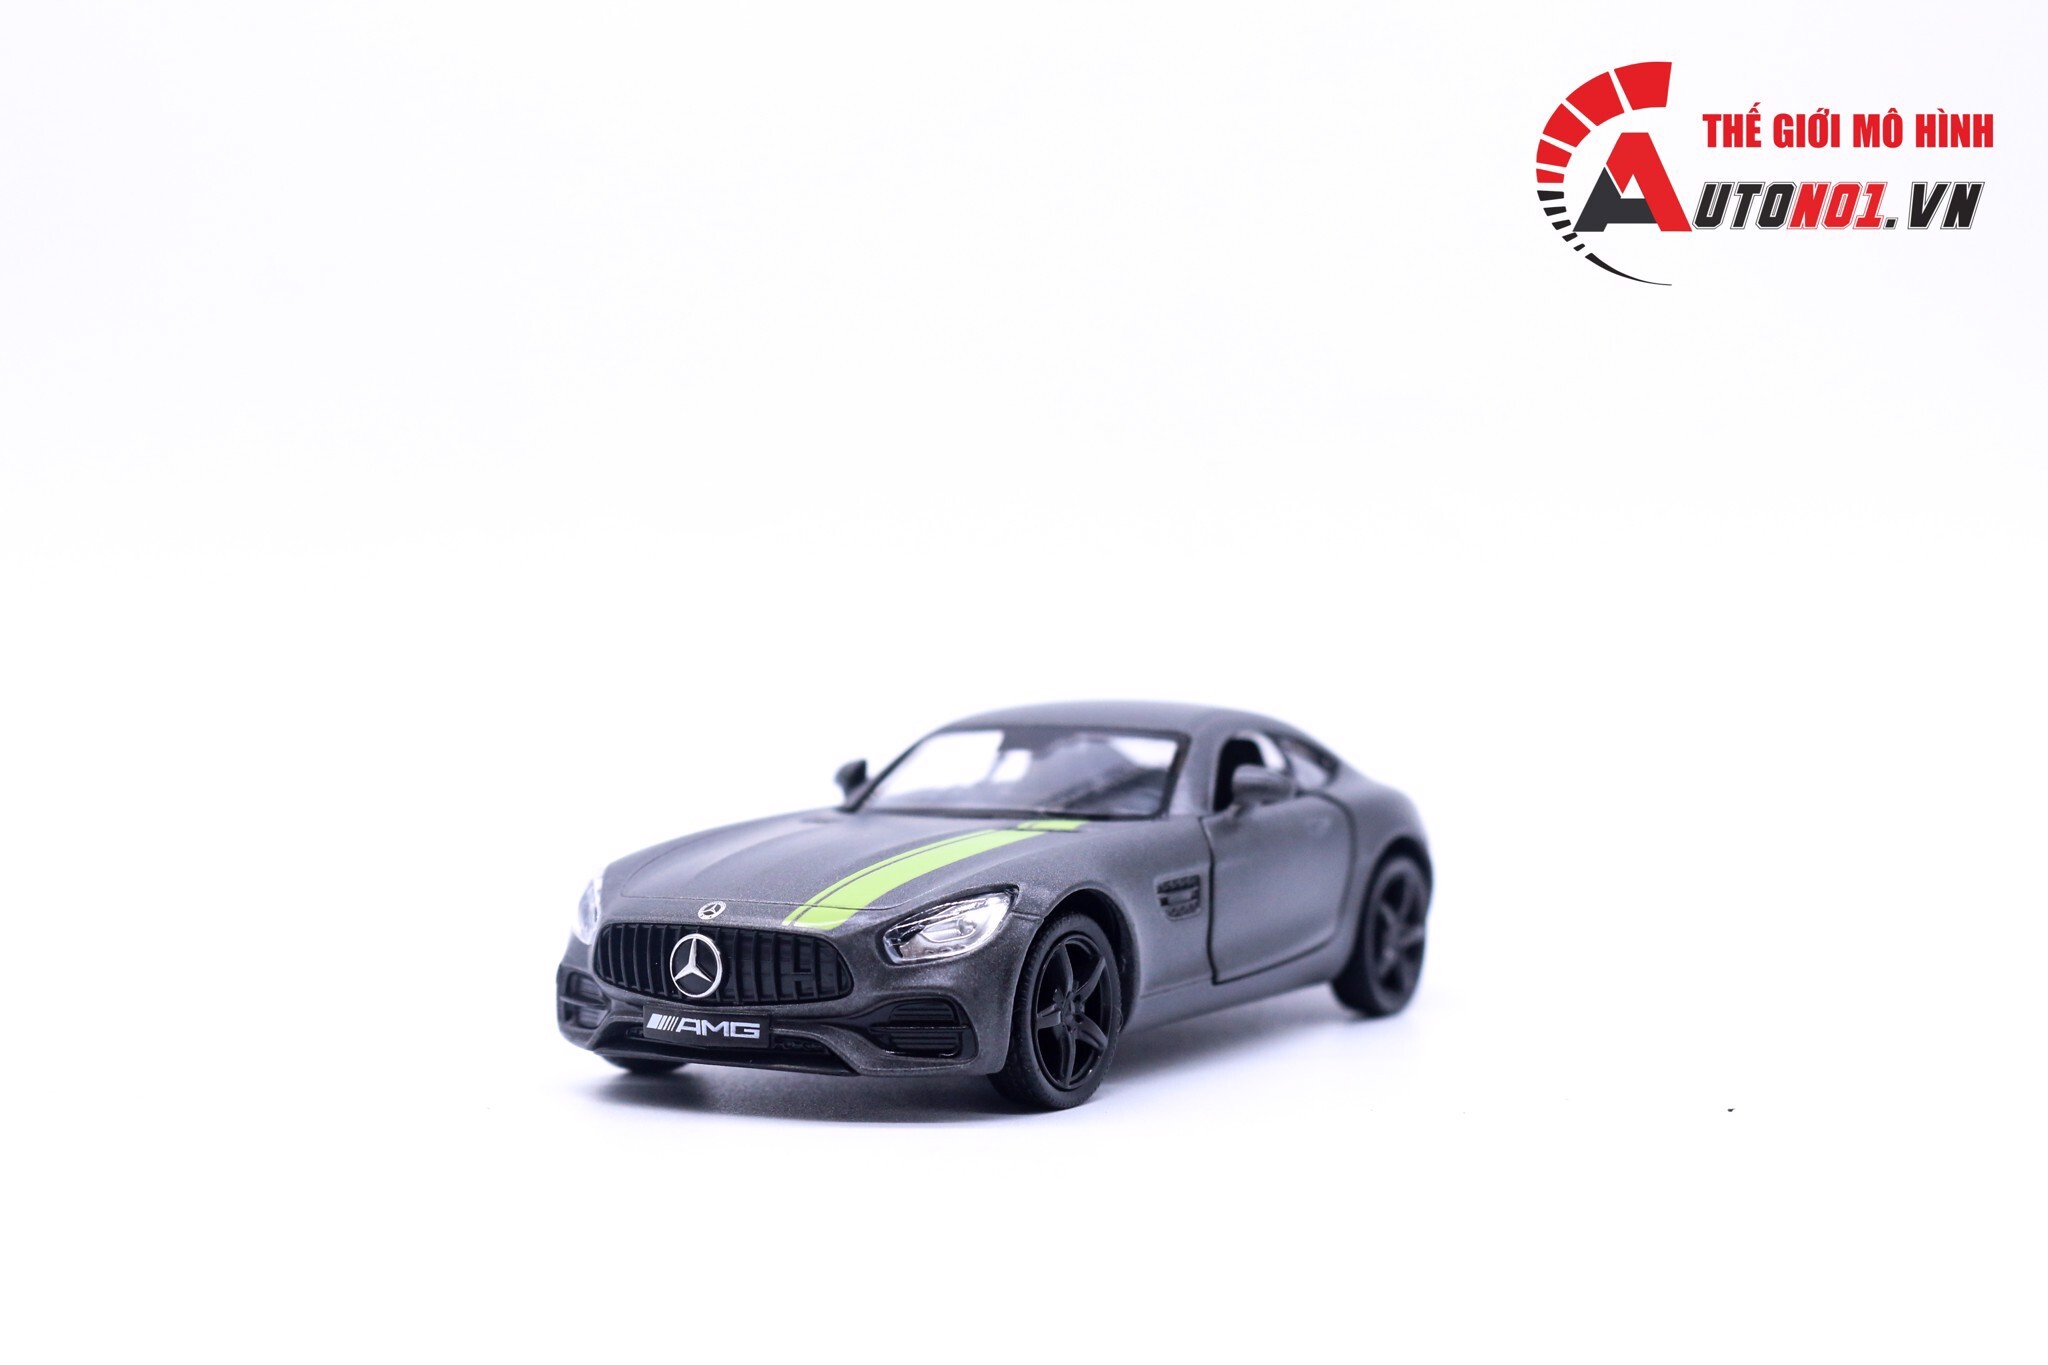 Mô hình xe Mercedes Benz AMG GTS 1:36